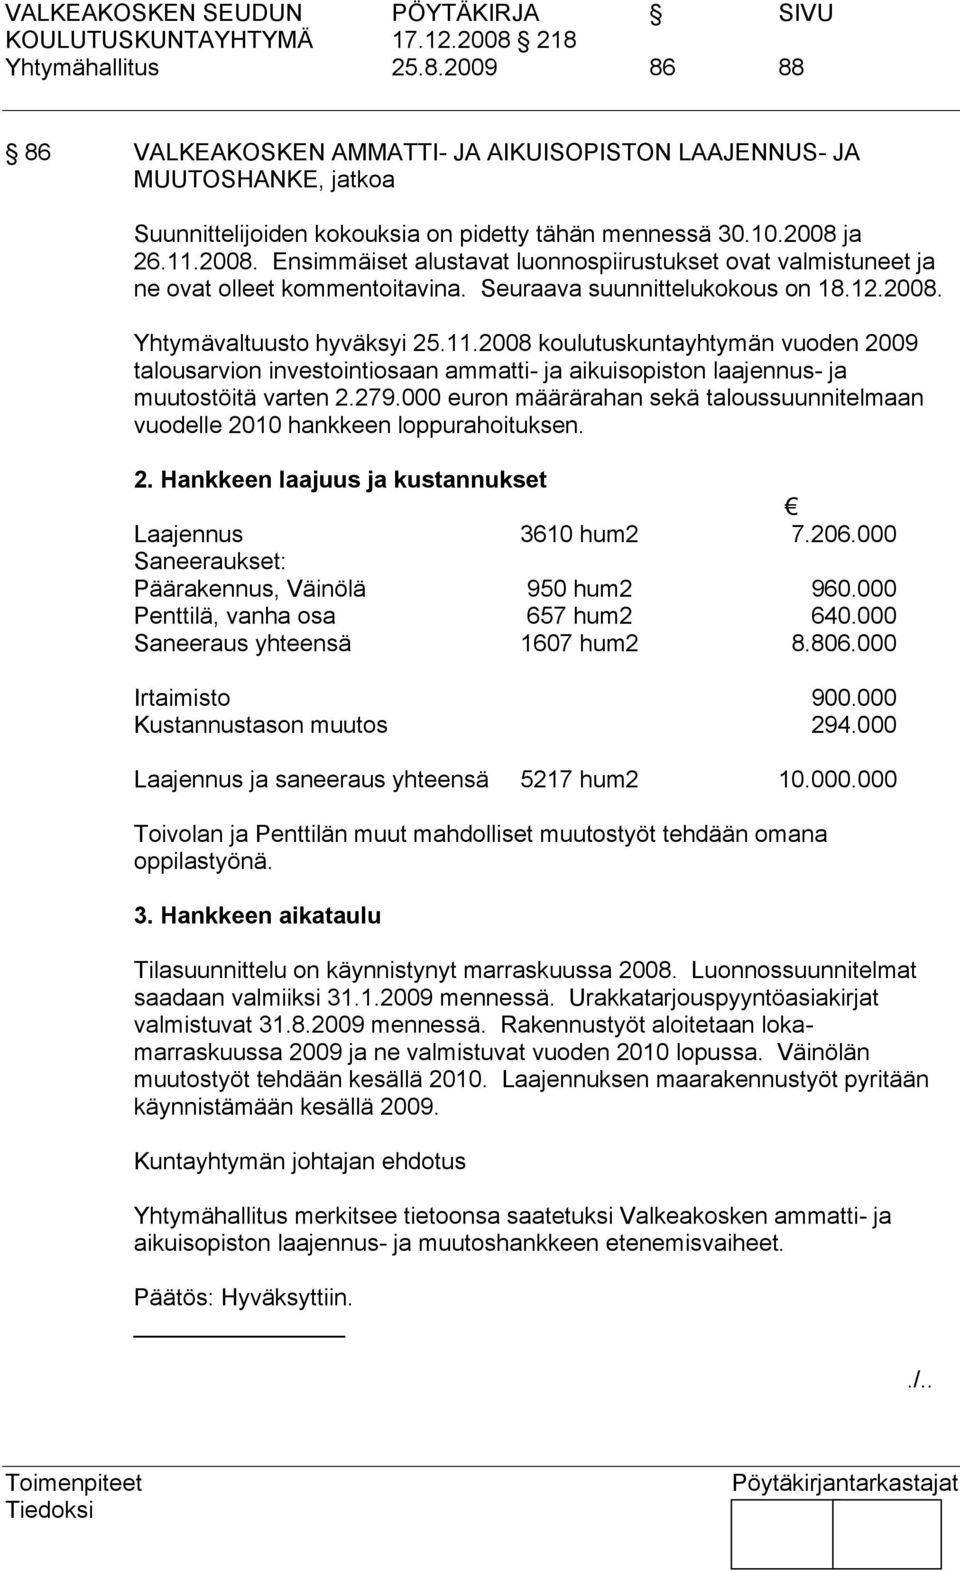 279.000 euron määrärahan sekä taloussuunnitelmaan vuodelle 2010 hankkeen loppurahoituksen. 2. Hankkeen laajuus ja kustannukset Laajennus 3610 hum2 7.206.